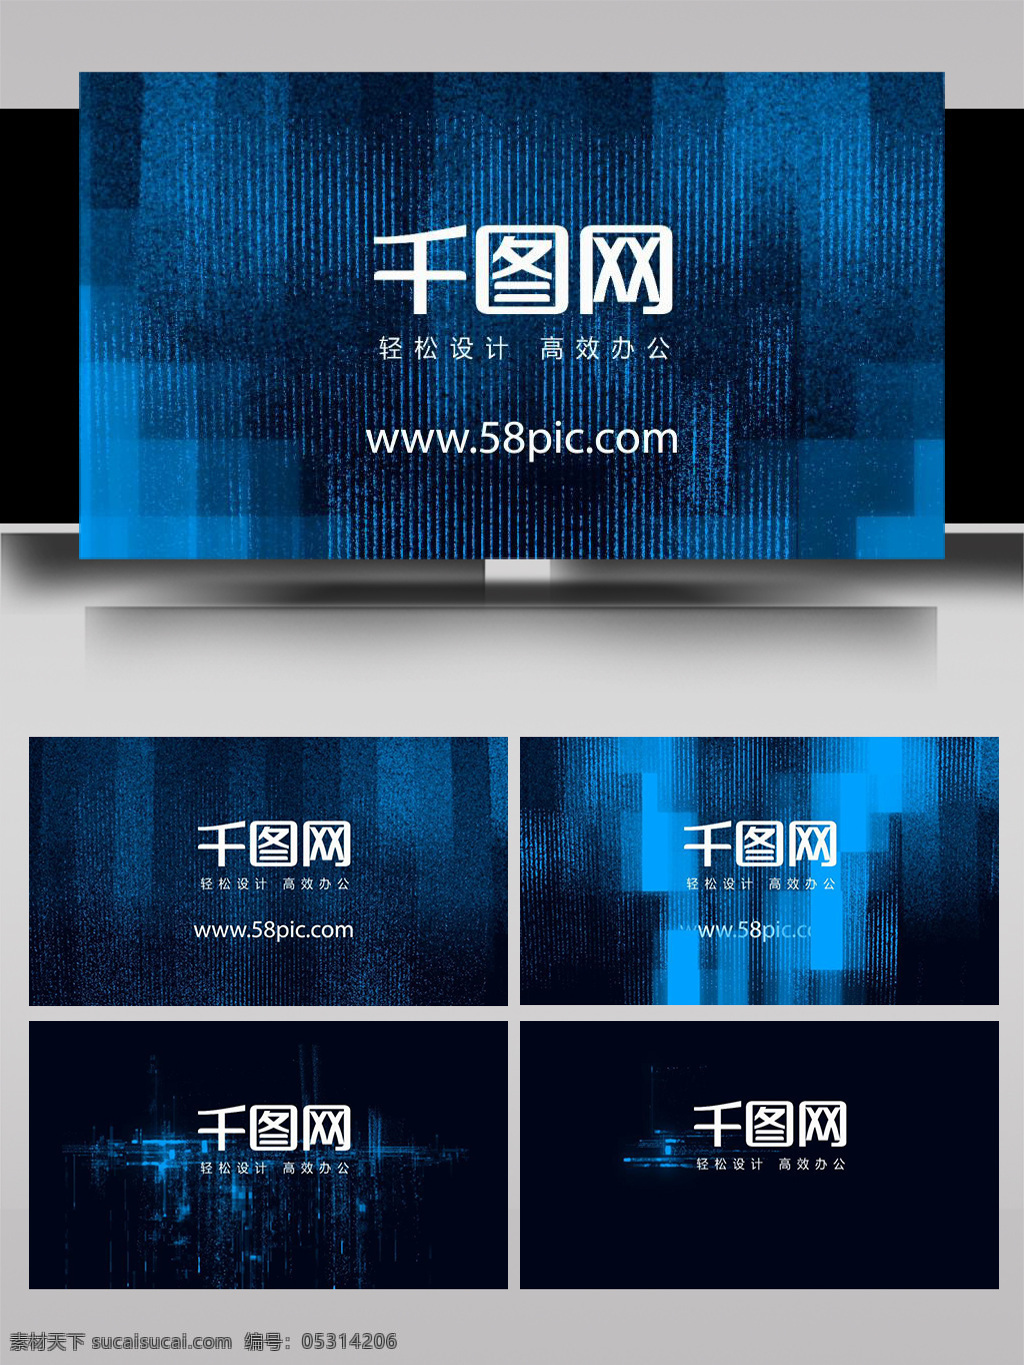 蓝色 网络 信息 科技 数字 组成 logoae 模板 立体 彩色 大气 标志 3d标志 简洁 旋转 散开 组合 光影 动态 logo 动画 展示 片头 转场 过度